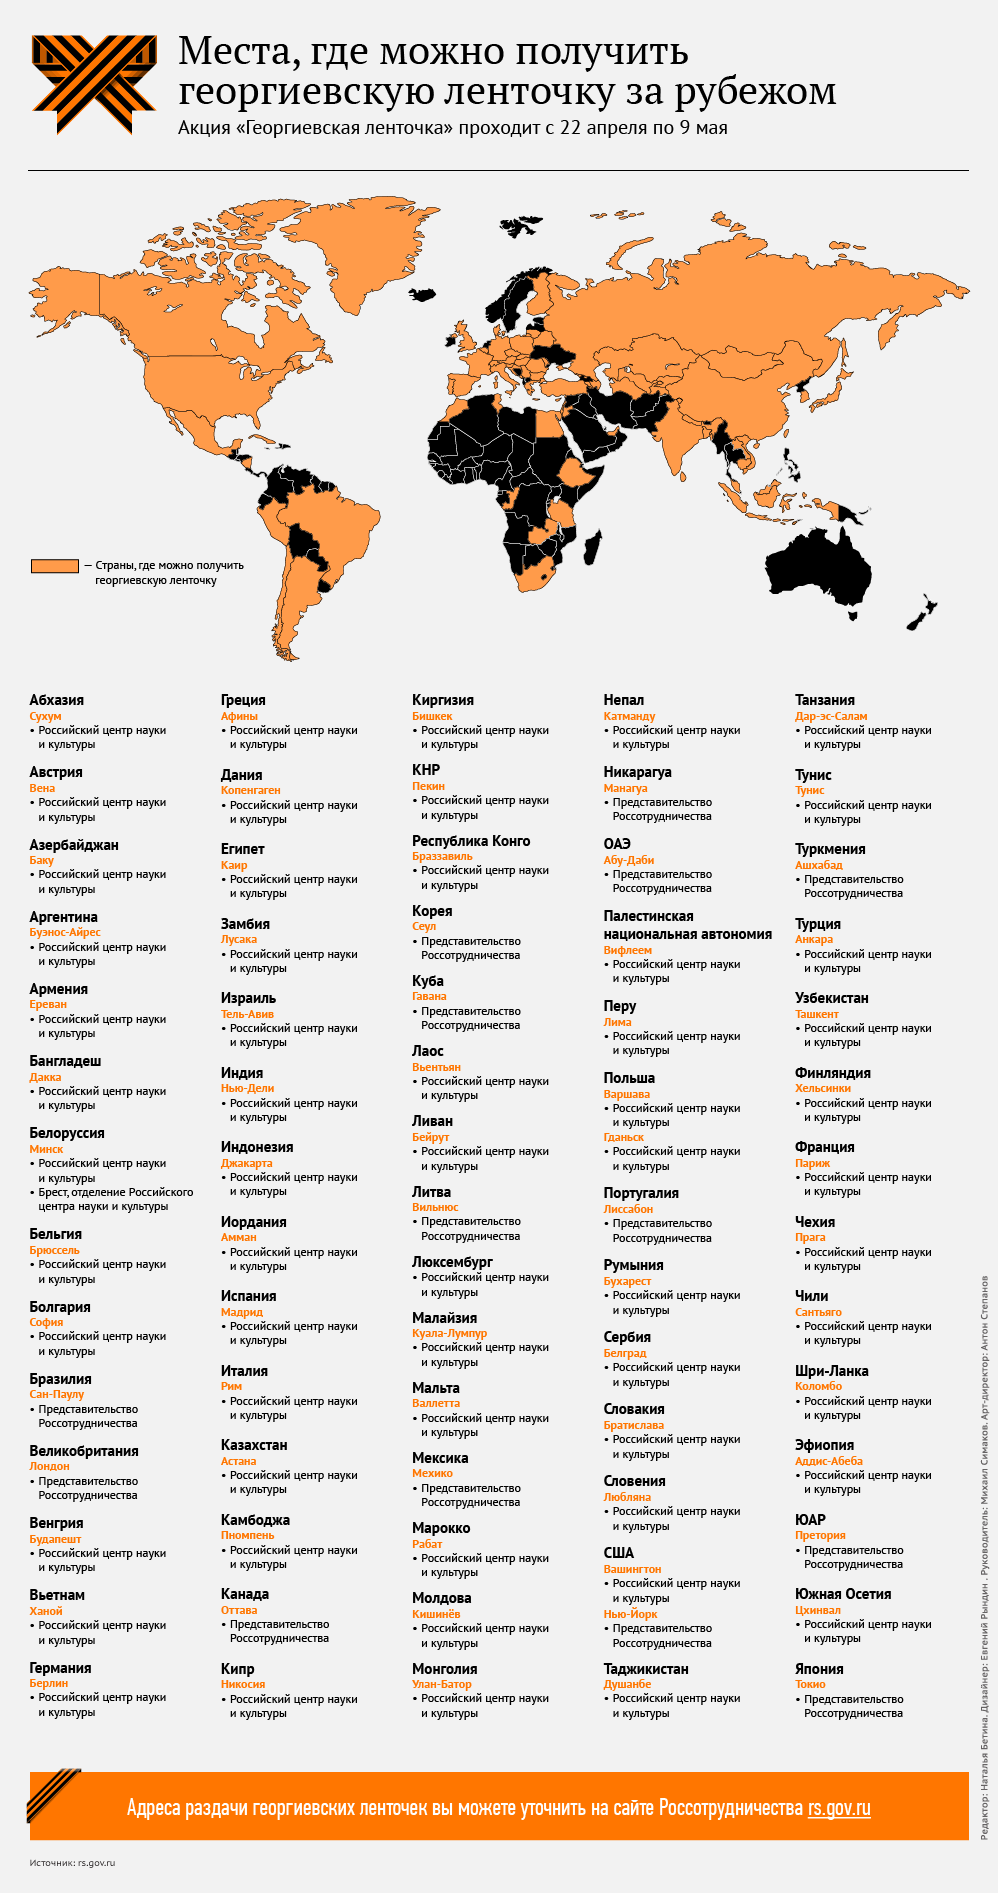 Страны, которые присоединились к акции Георгиевская ленточка